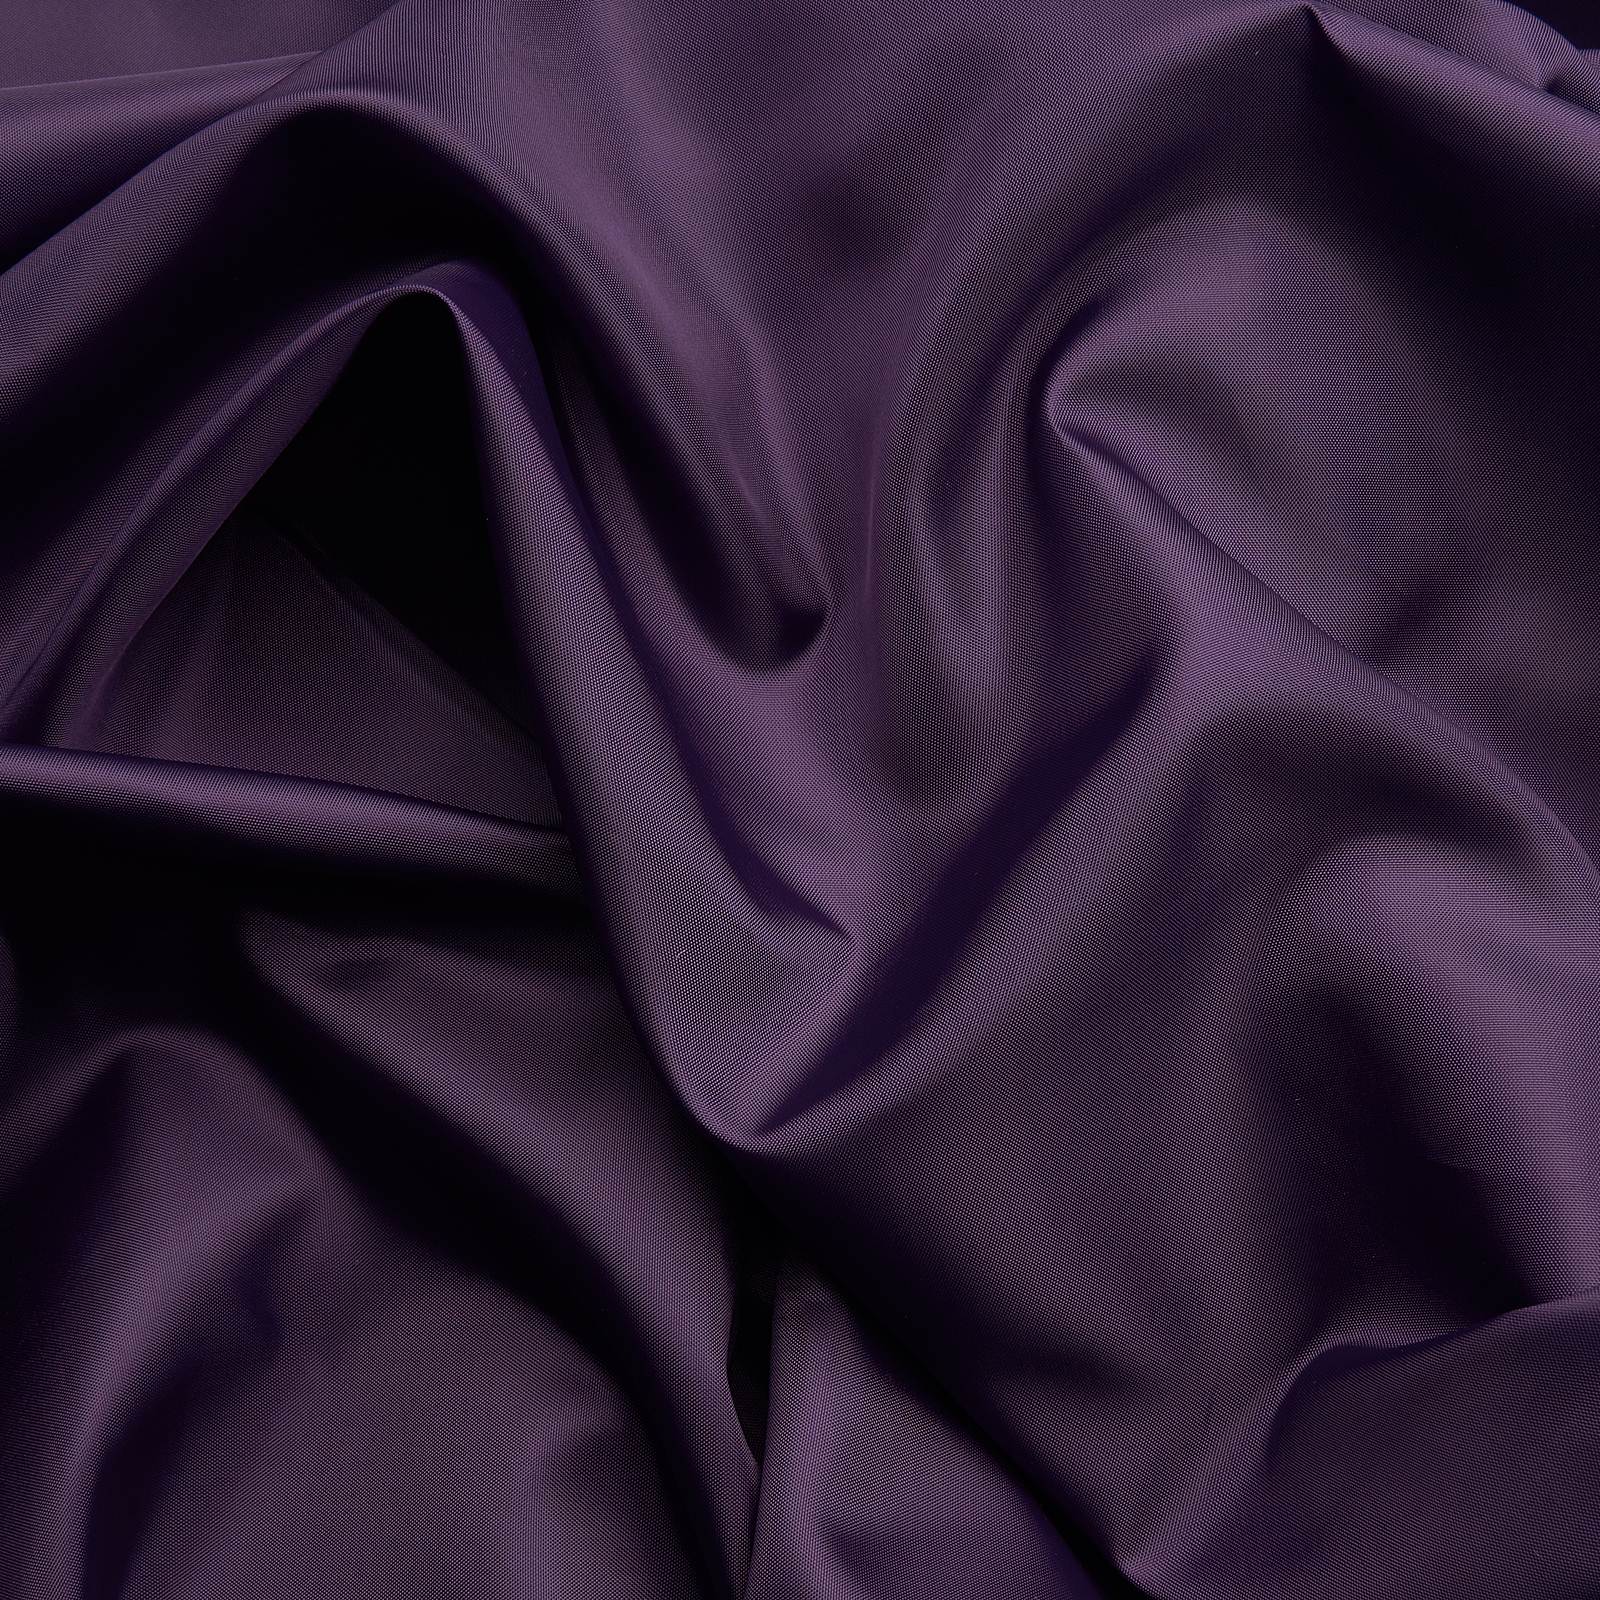 Violeta Escuro	